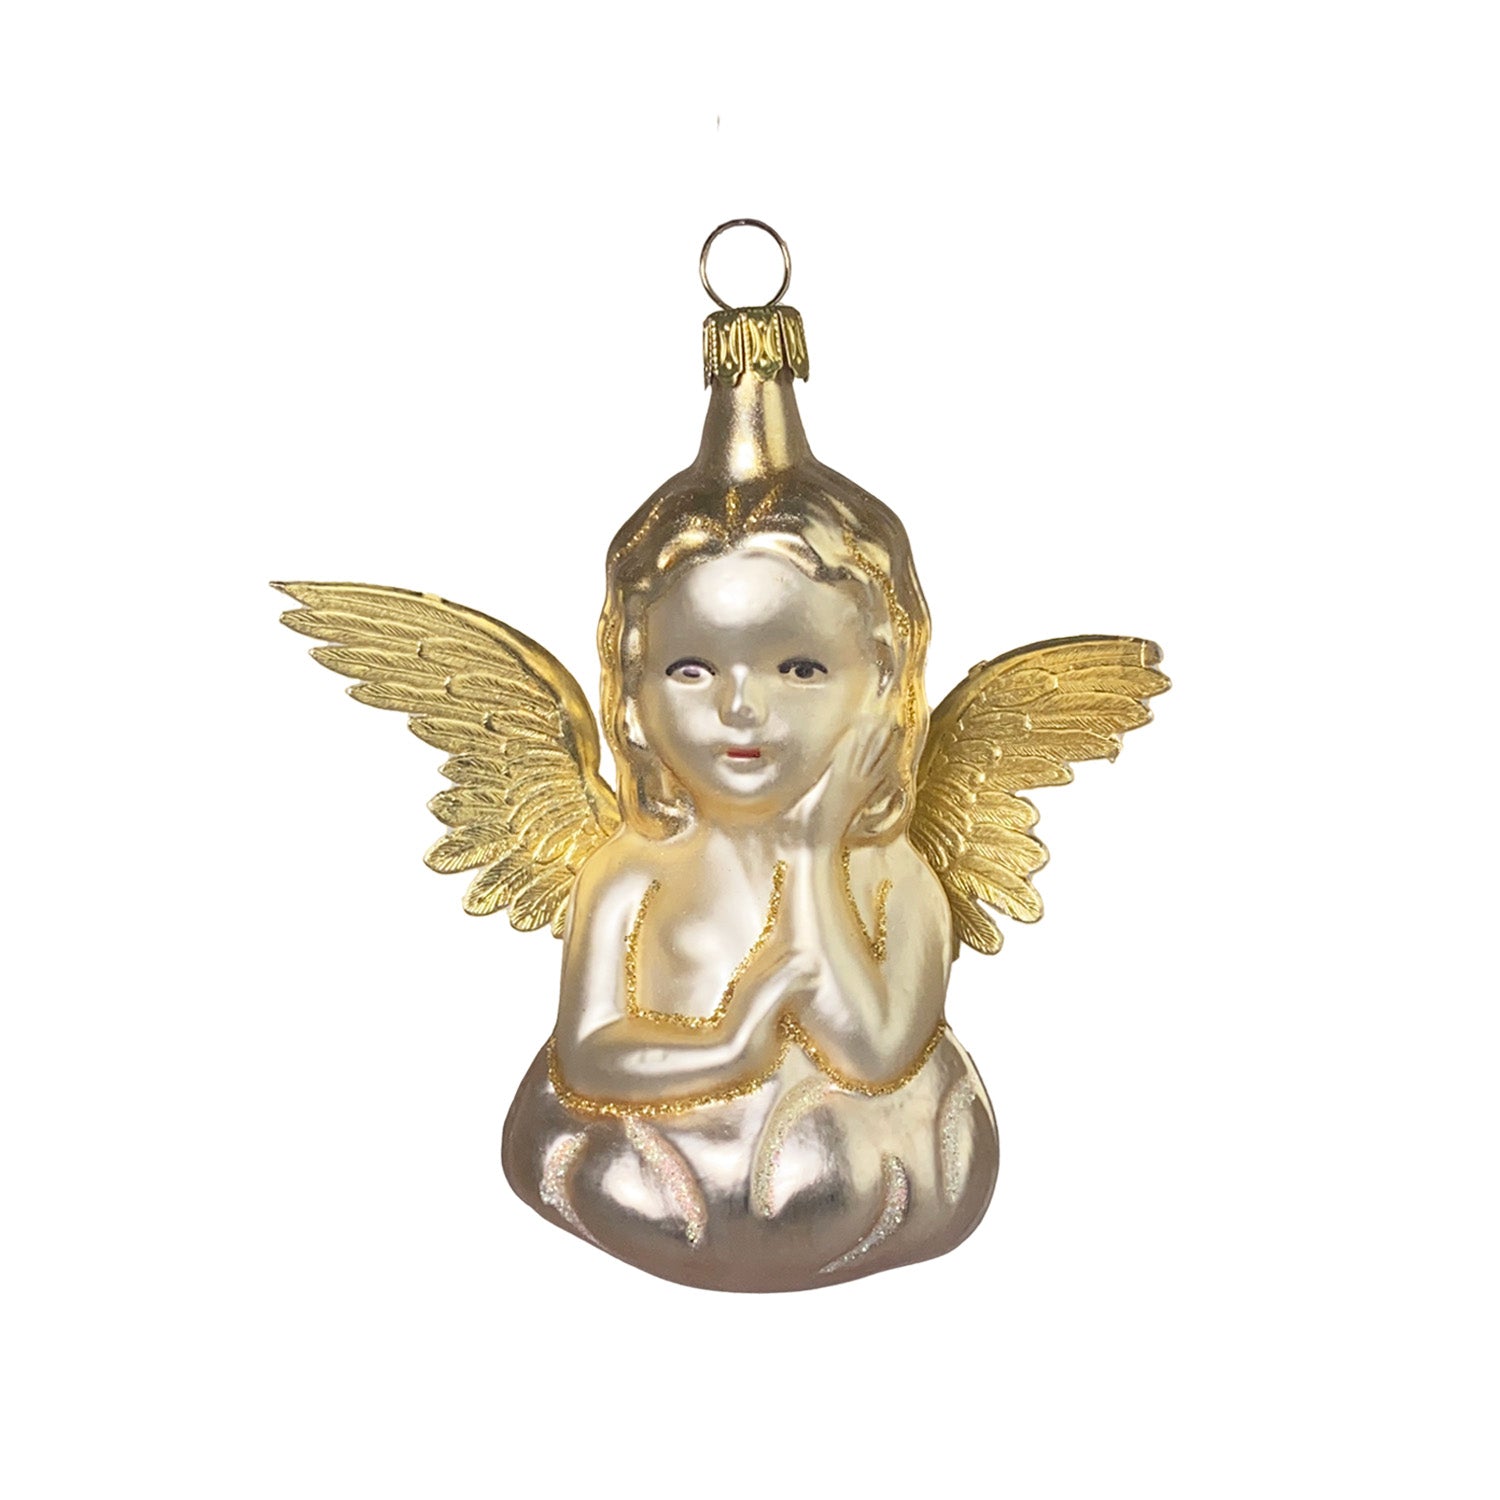 Engel sitzend gold Christbaumkugel aus Glas